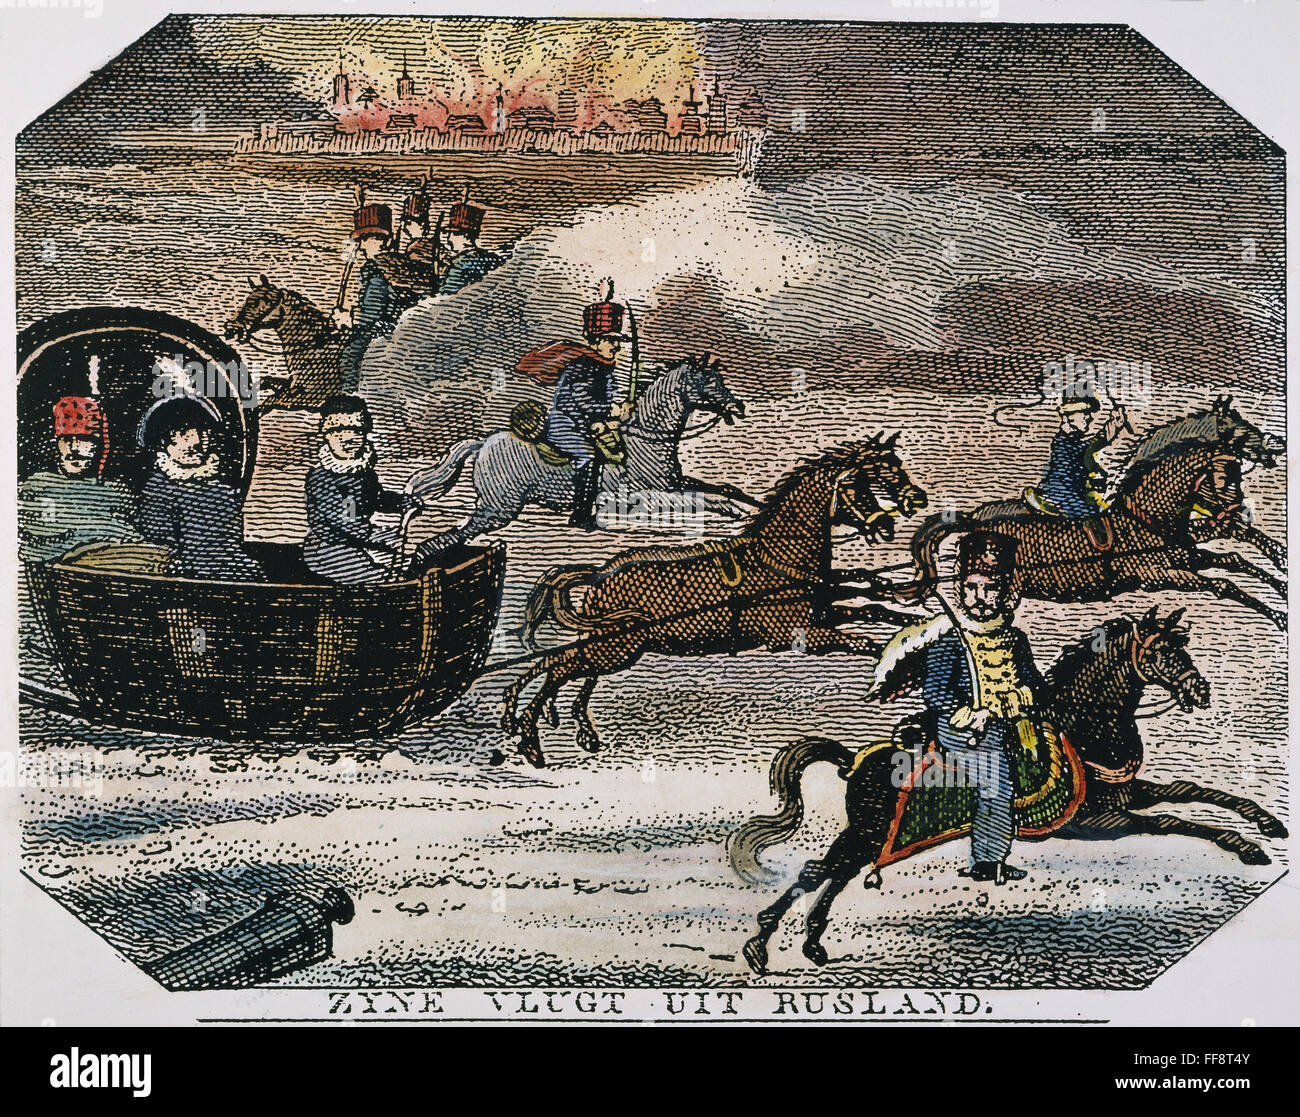 NAPOLEON I LEAVING RUSSIA. /nNapoleon I's retreat from Russia, 1812. Contempoary Dutch copper enraving. Stock Photo